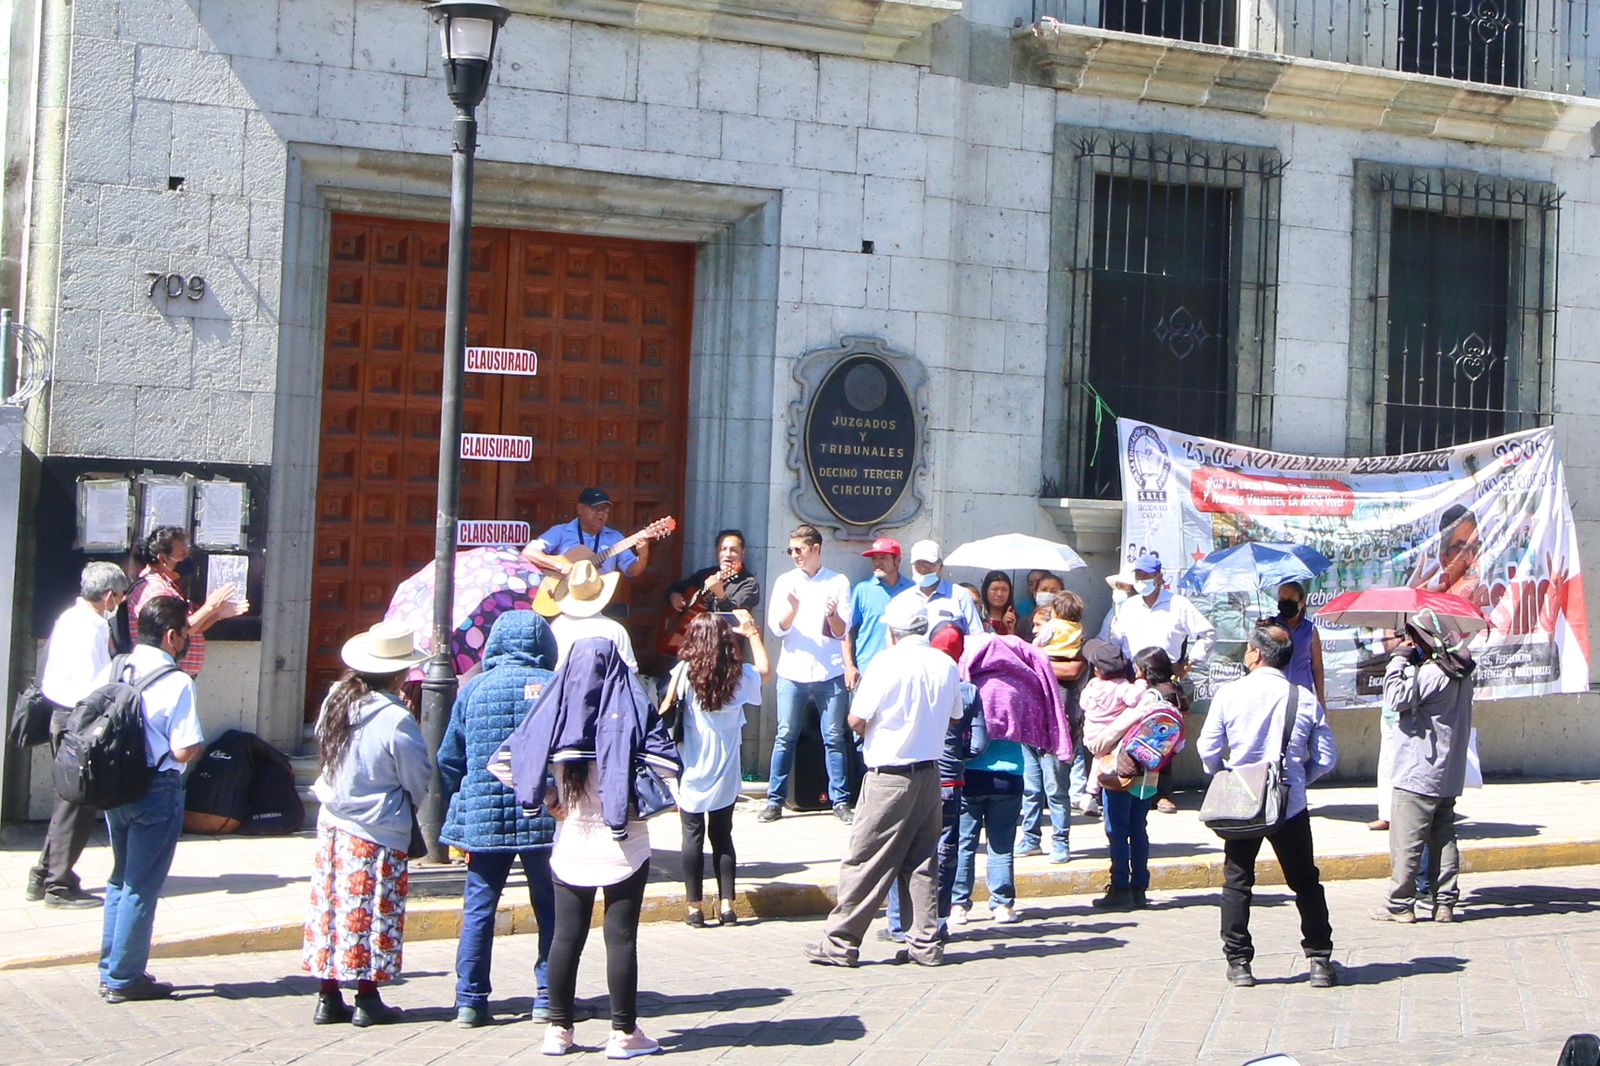 ▶ Exigen al gobierno de Oaxaca investigar a funcionarios involucrados en el conflicto de 2006